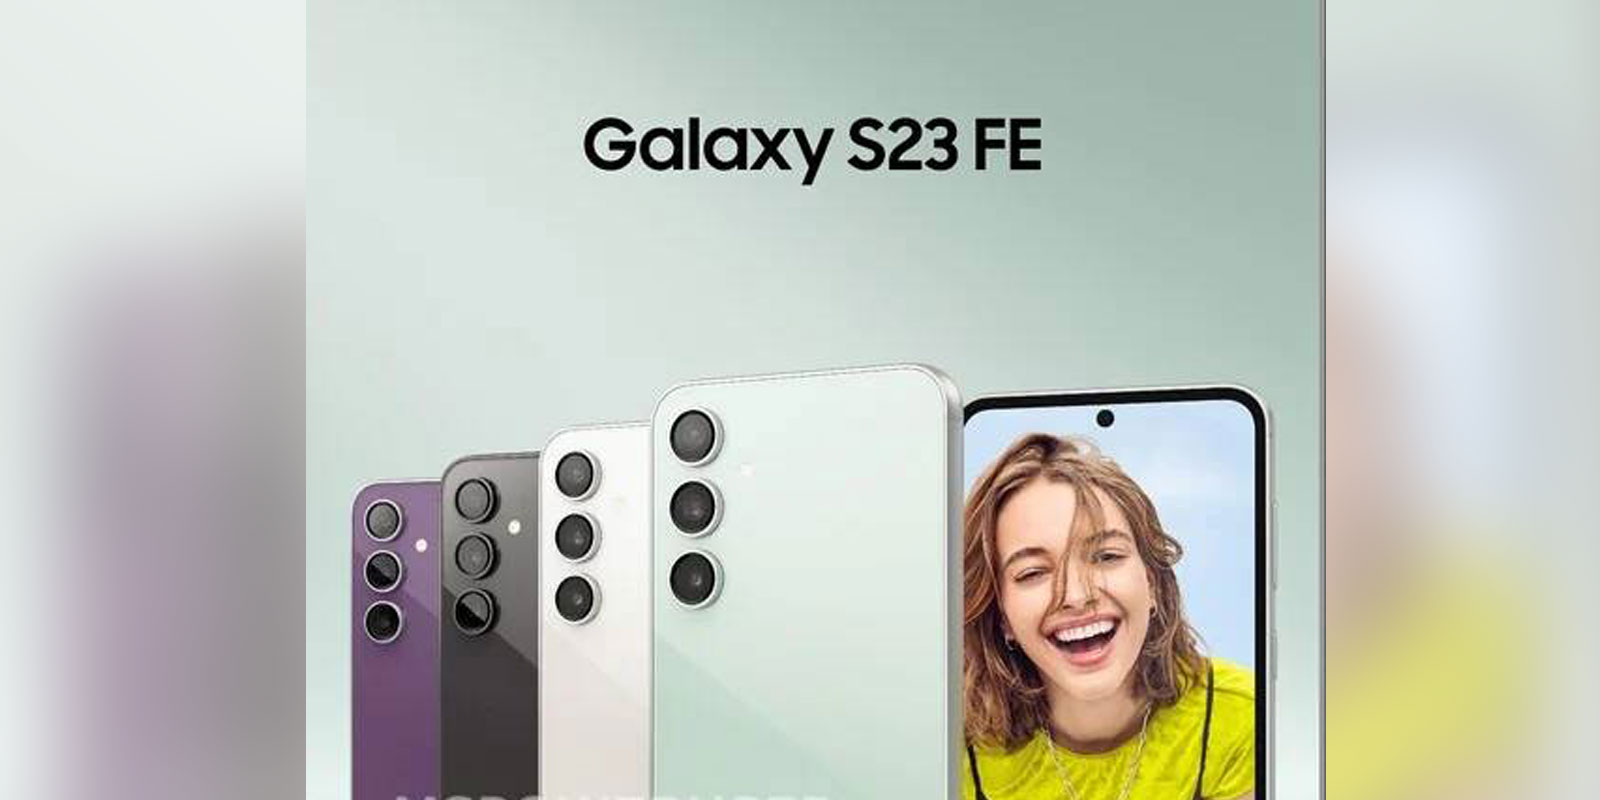 ▷Esto es todo lo que sabemos sobre el Samsung Galaxy S23 FE 2023